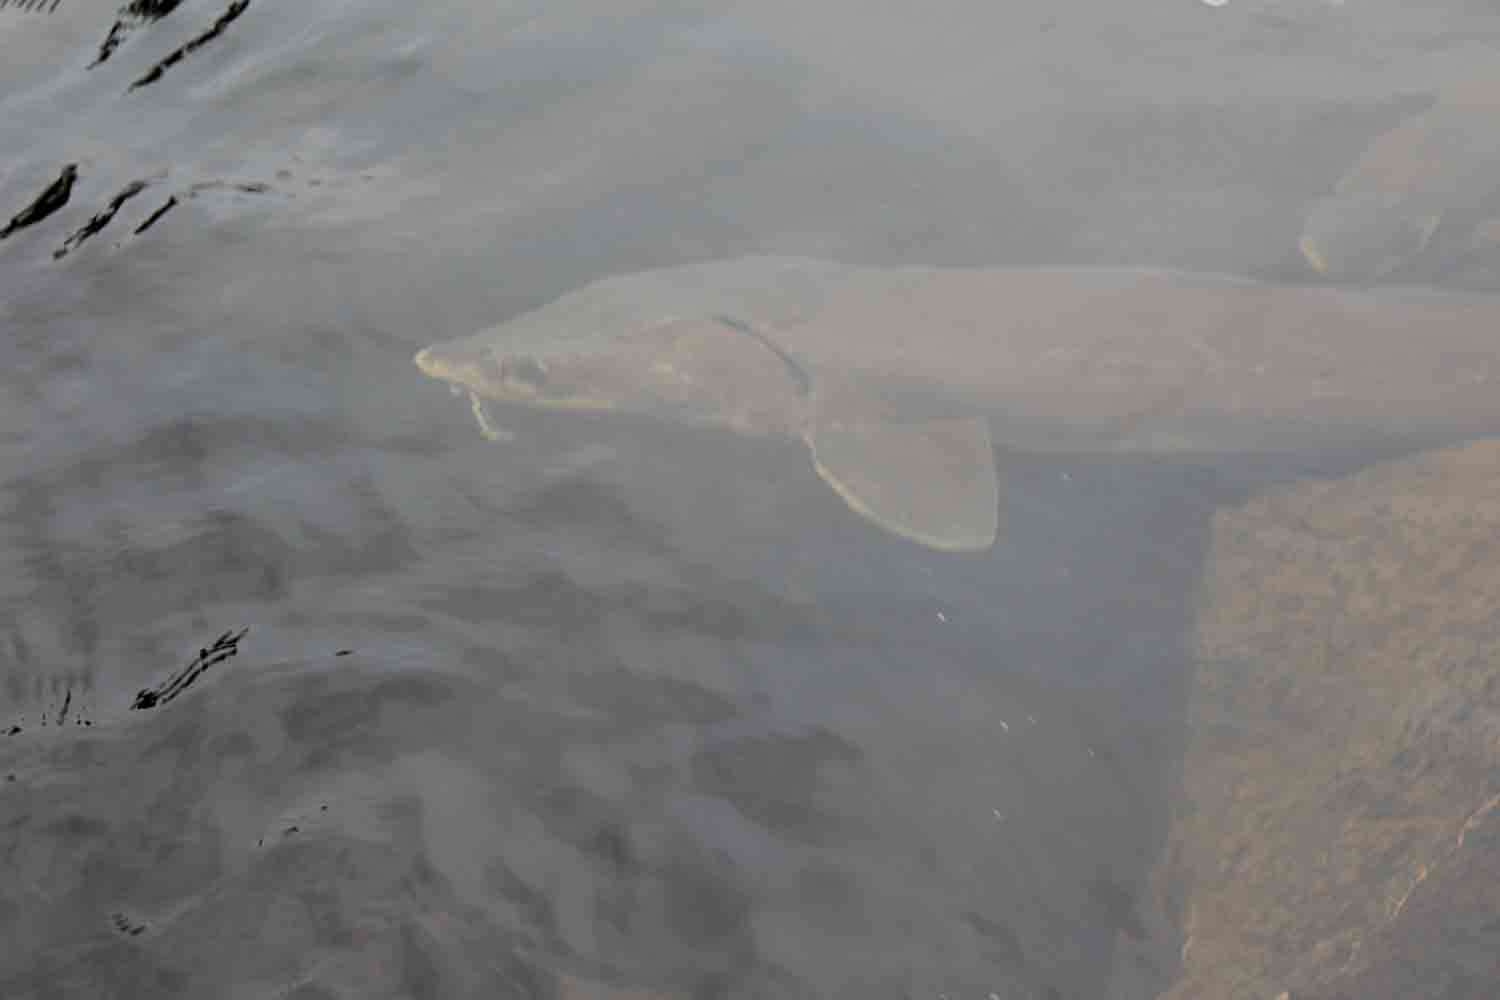 A sturgeon in the Mattagami River